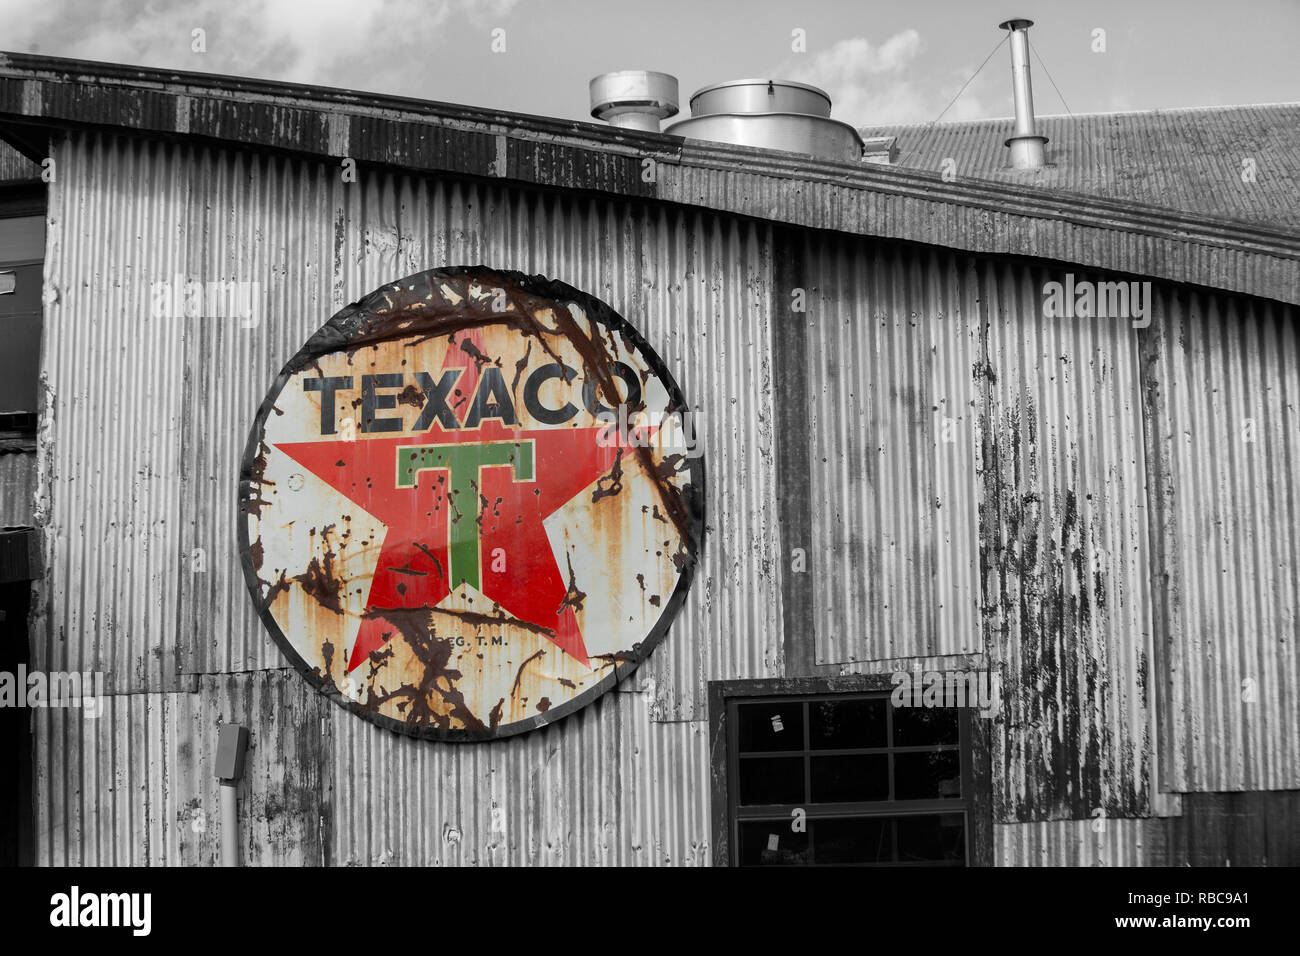 Verwitterte Texaco unterzeichnen. Texaco, Inc. ("Texas") ist eine US-amerikanische Öl Tochtergesellschaft der Chevron Corporation. Stockfoto